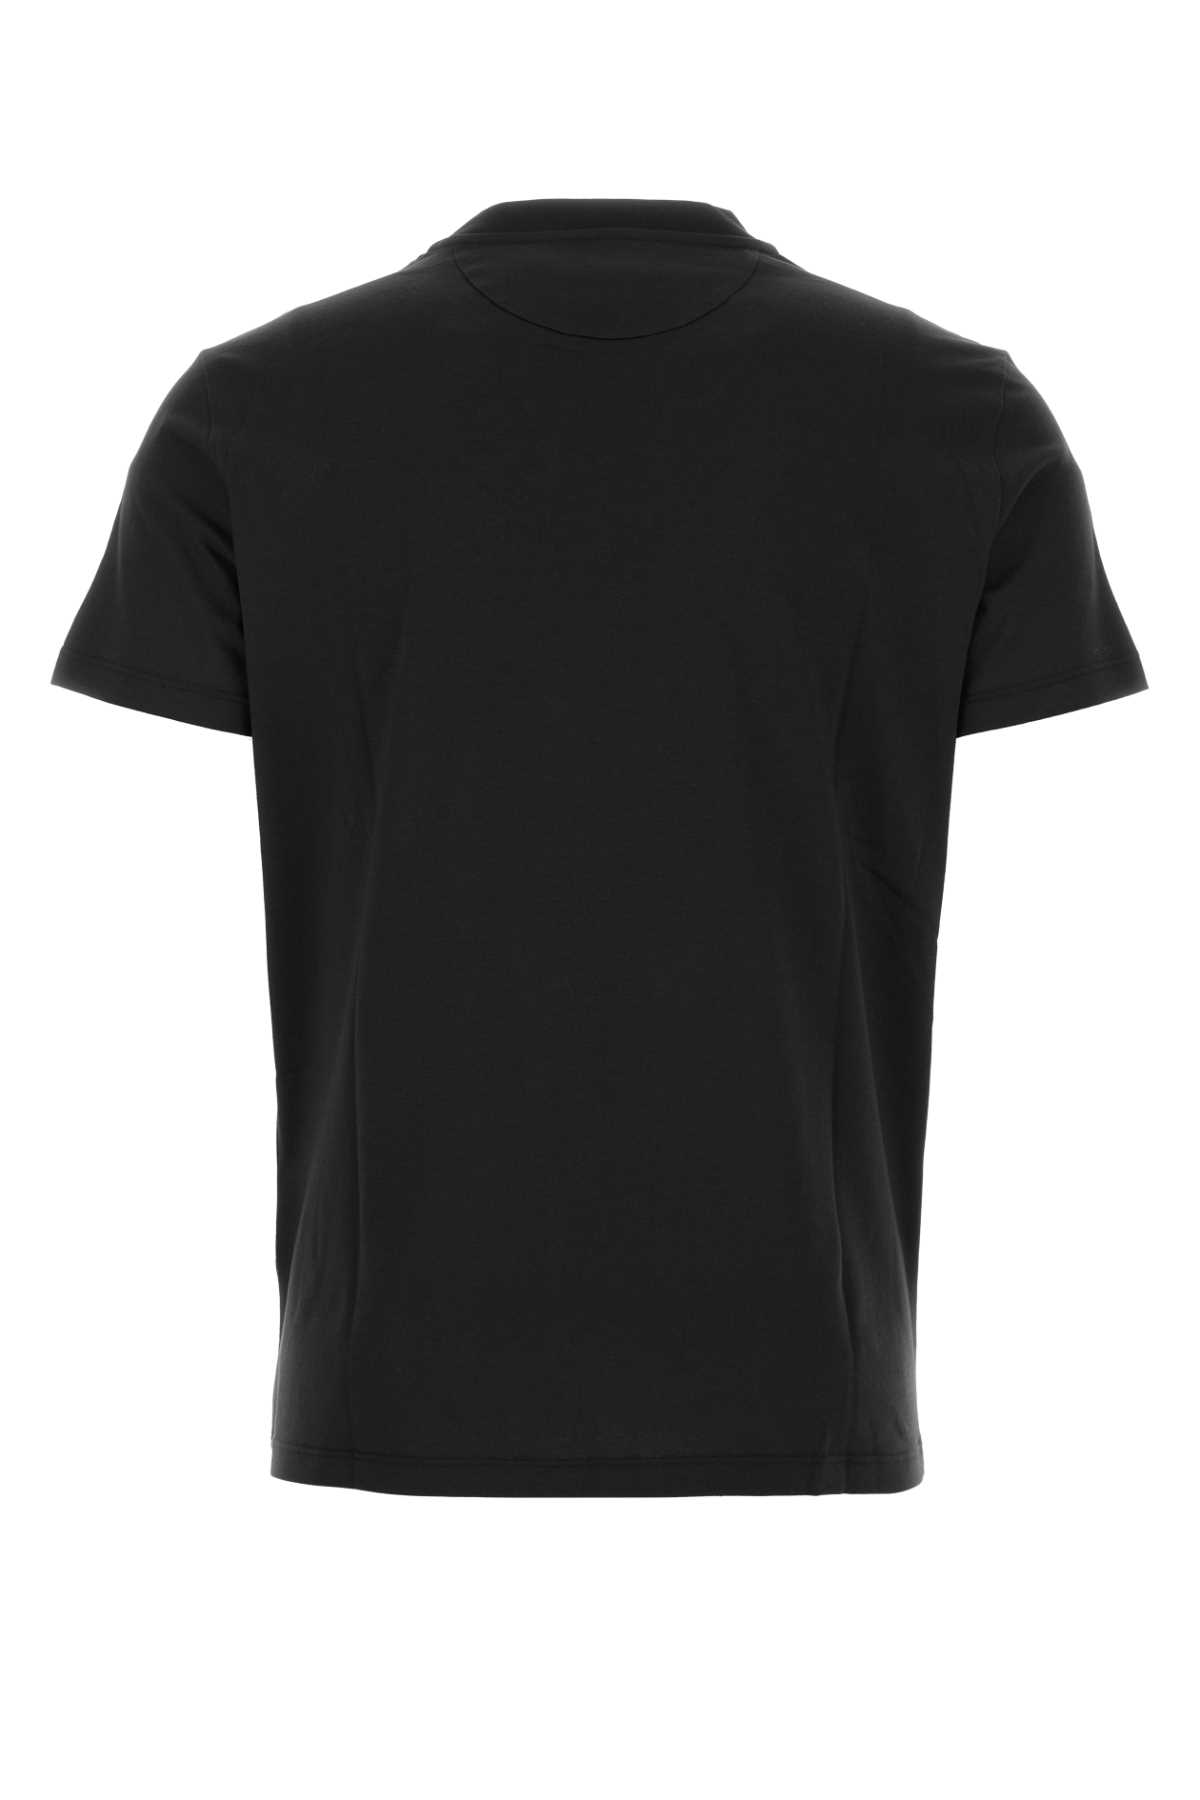 Valentino Black Cotton T-shirt In Nero